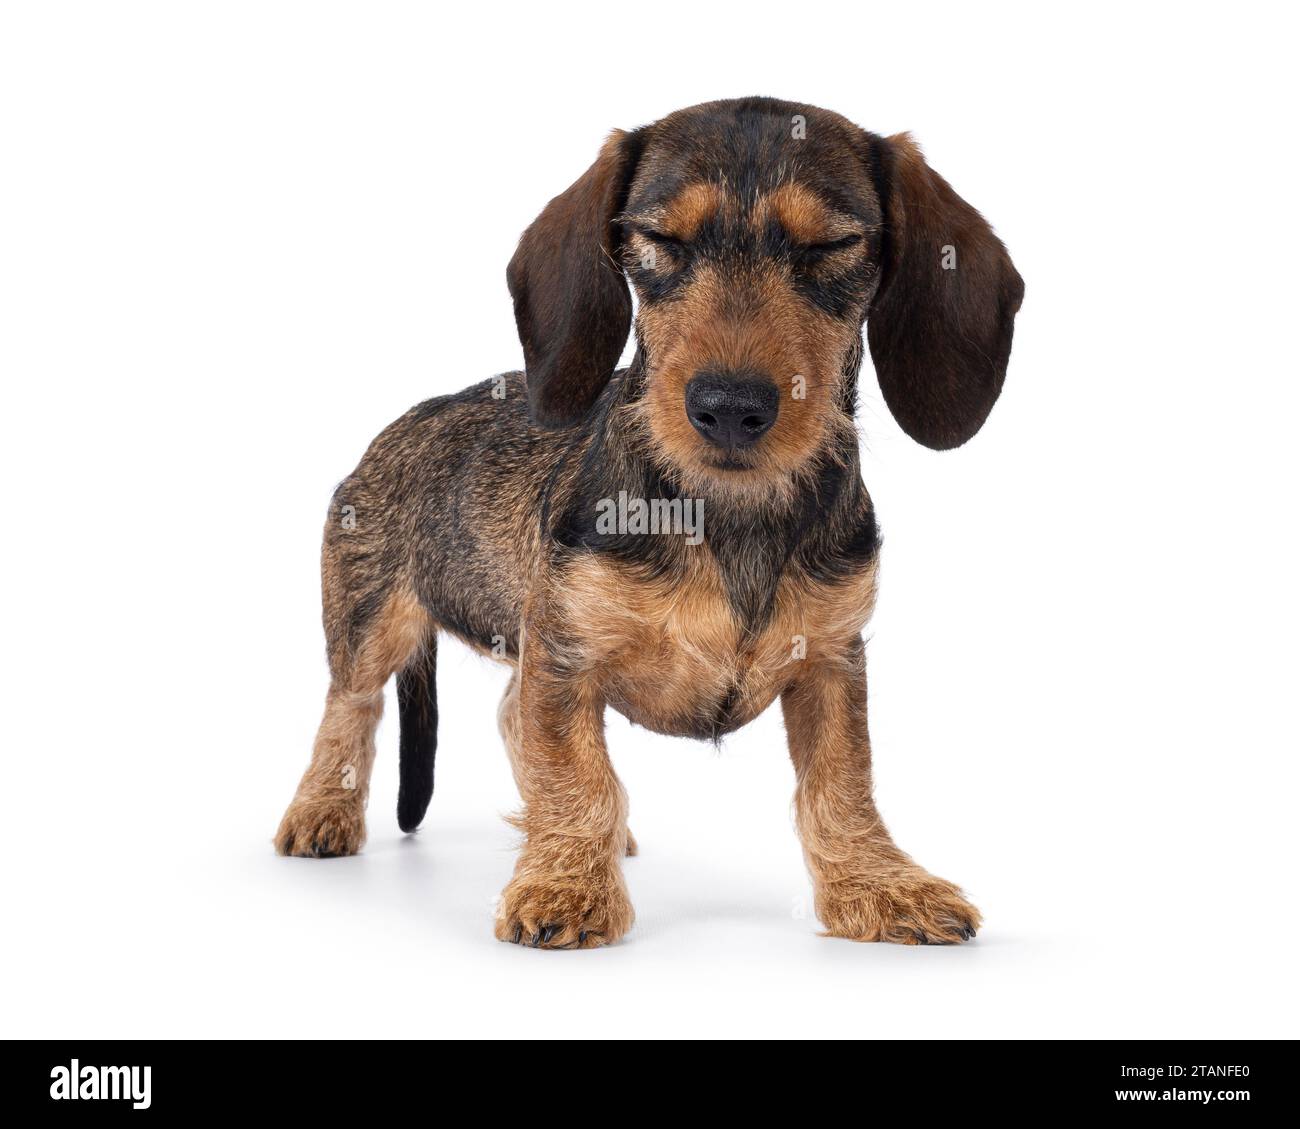 Adorable chien teckel brun chiot, debout sur le côté. Les deux yeux fermés. isolé sur fond blanc. Banque D'Images